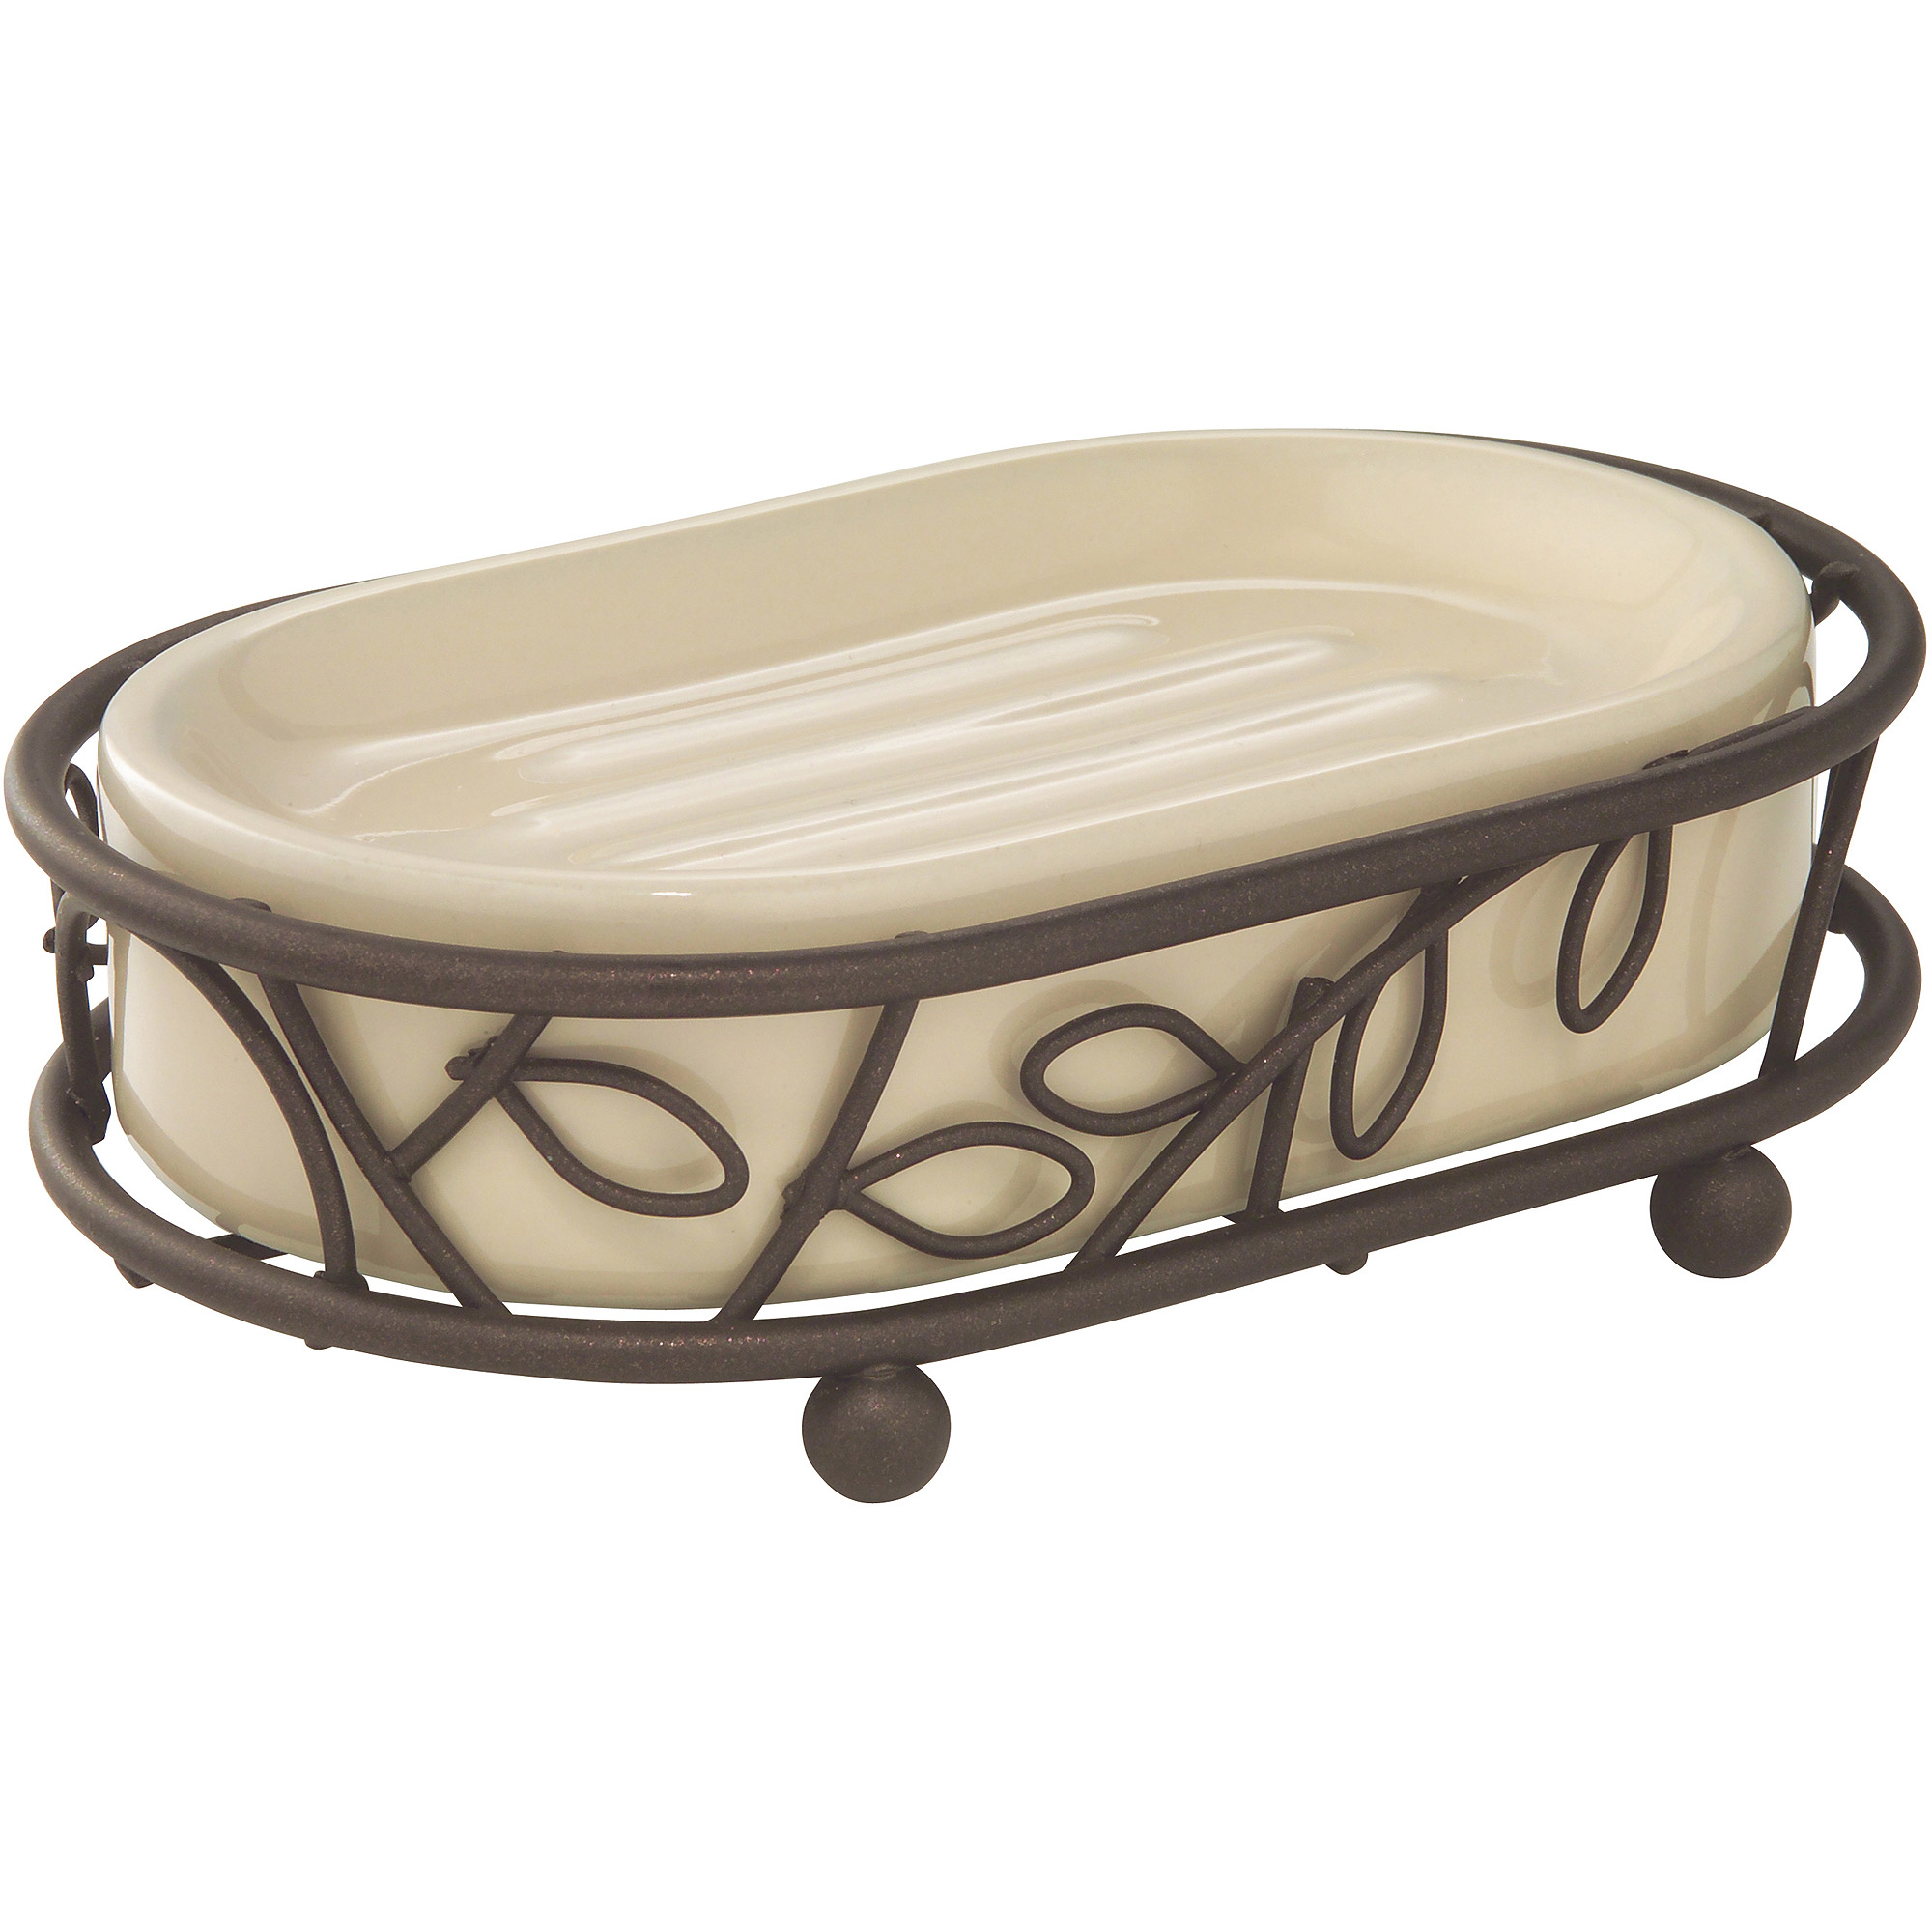 InterDesign Twigz Ceramic Soap Dish, Vanilla/Bronze - image 1 of 5